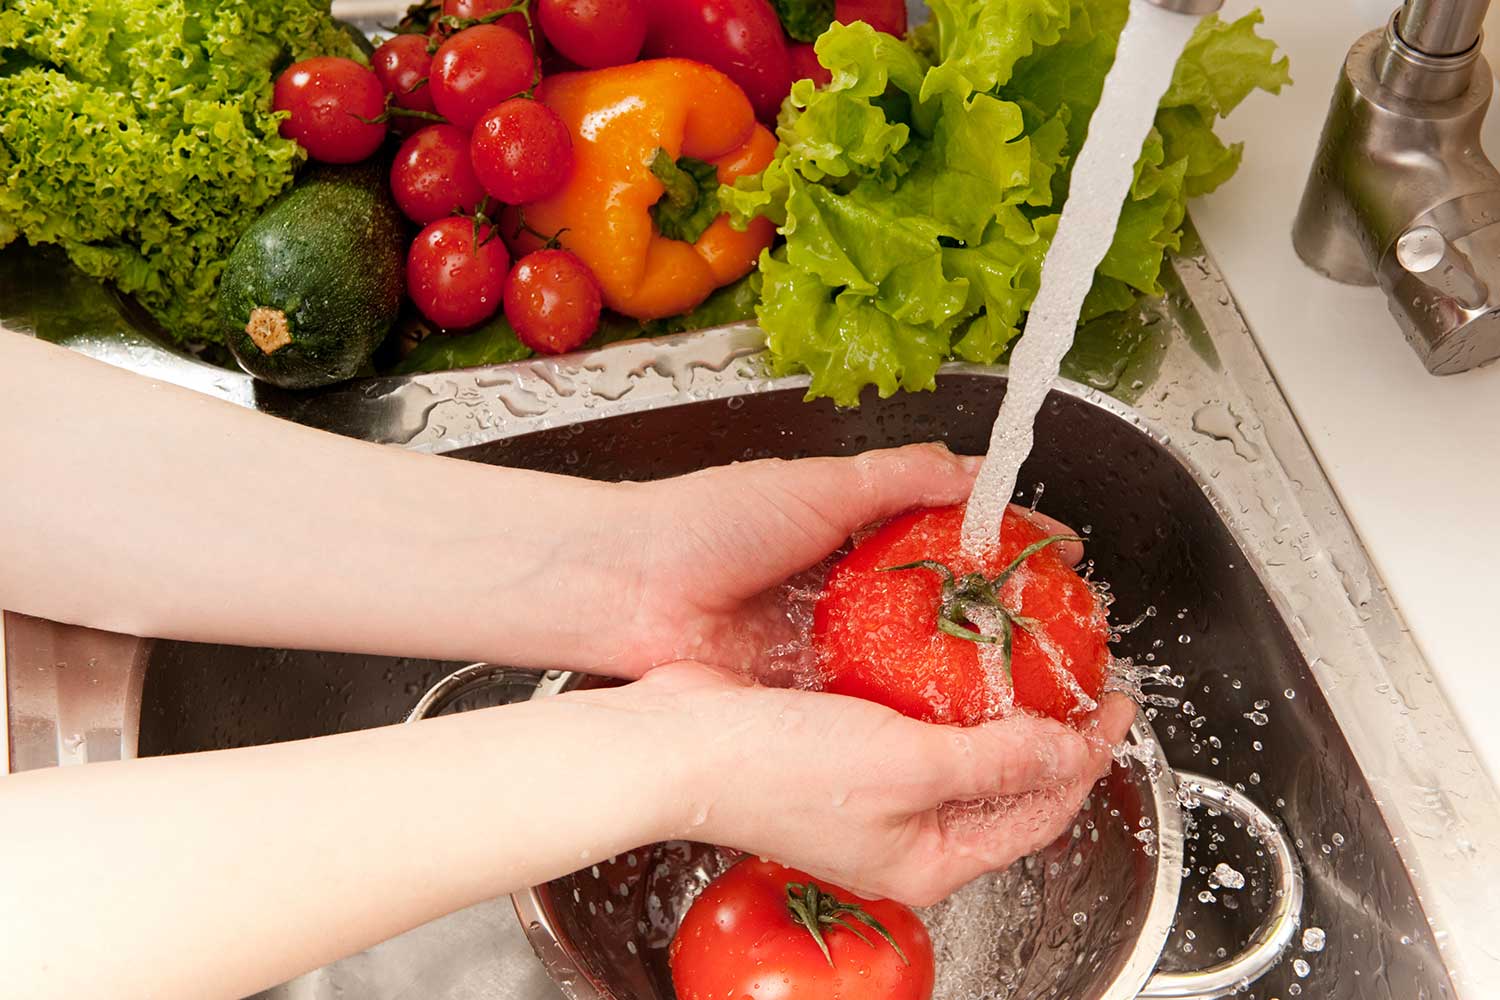 Saiba como lavar corretamente as frutas, verduras e legumes